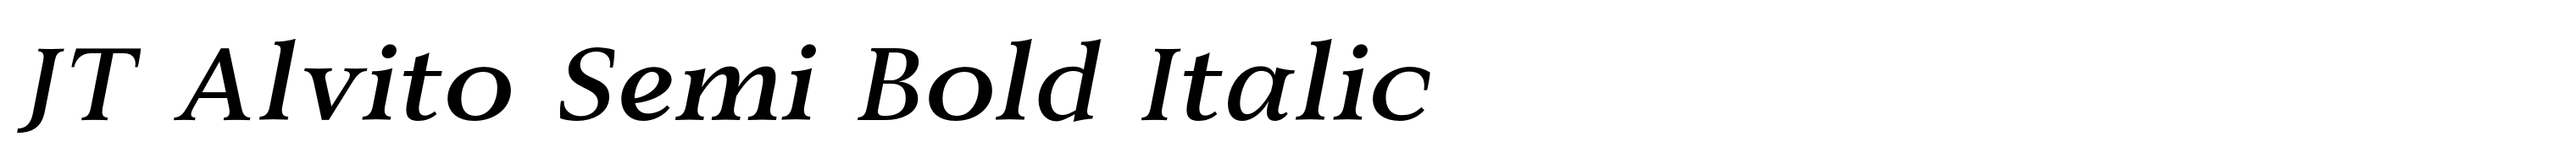 JT Alvito Semi Bold Italic